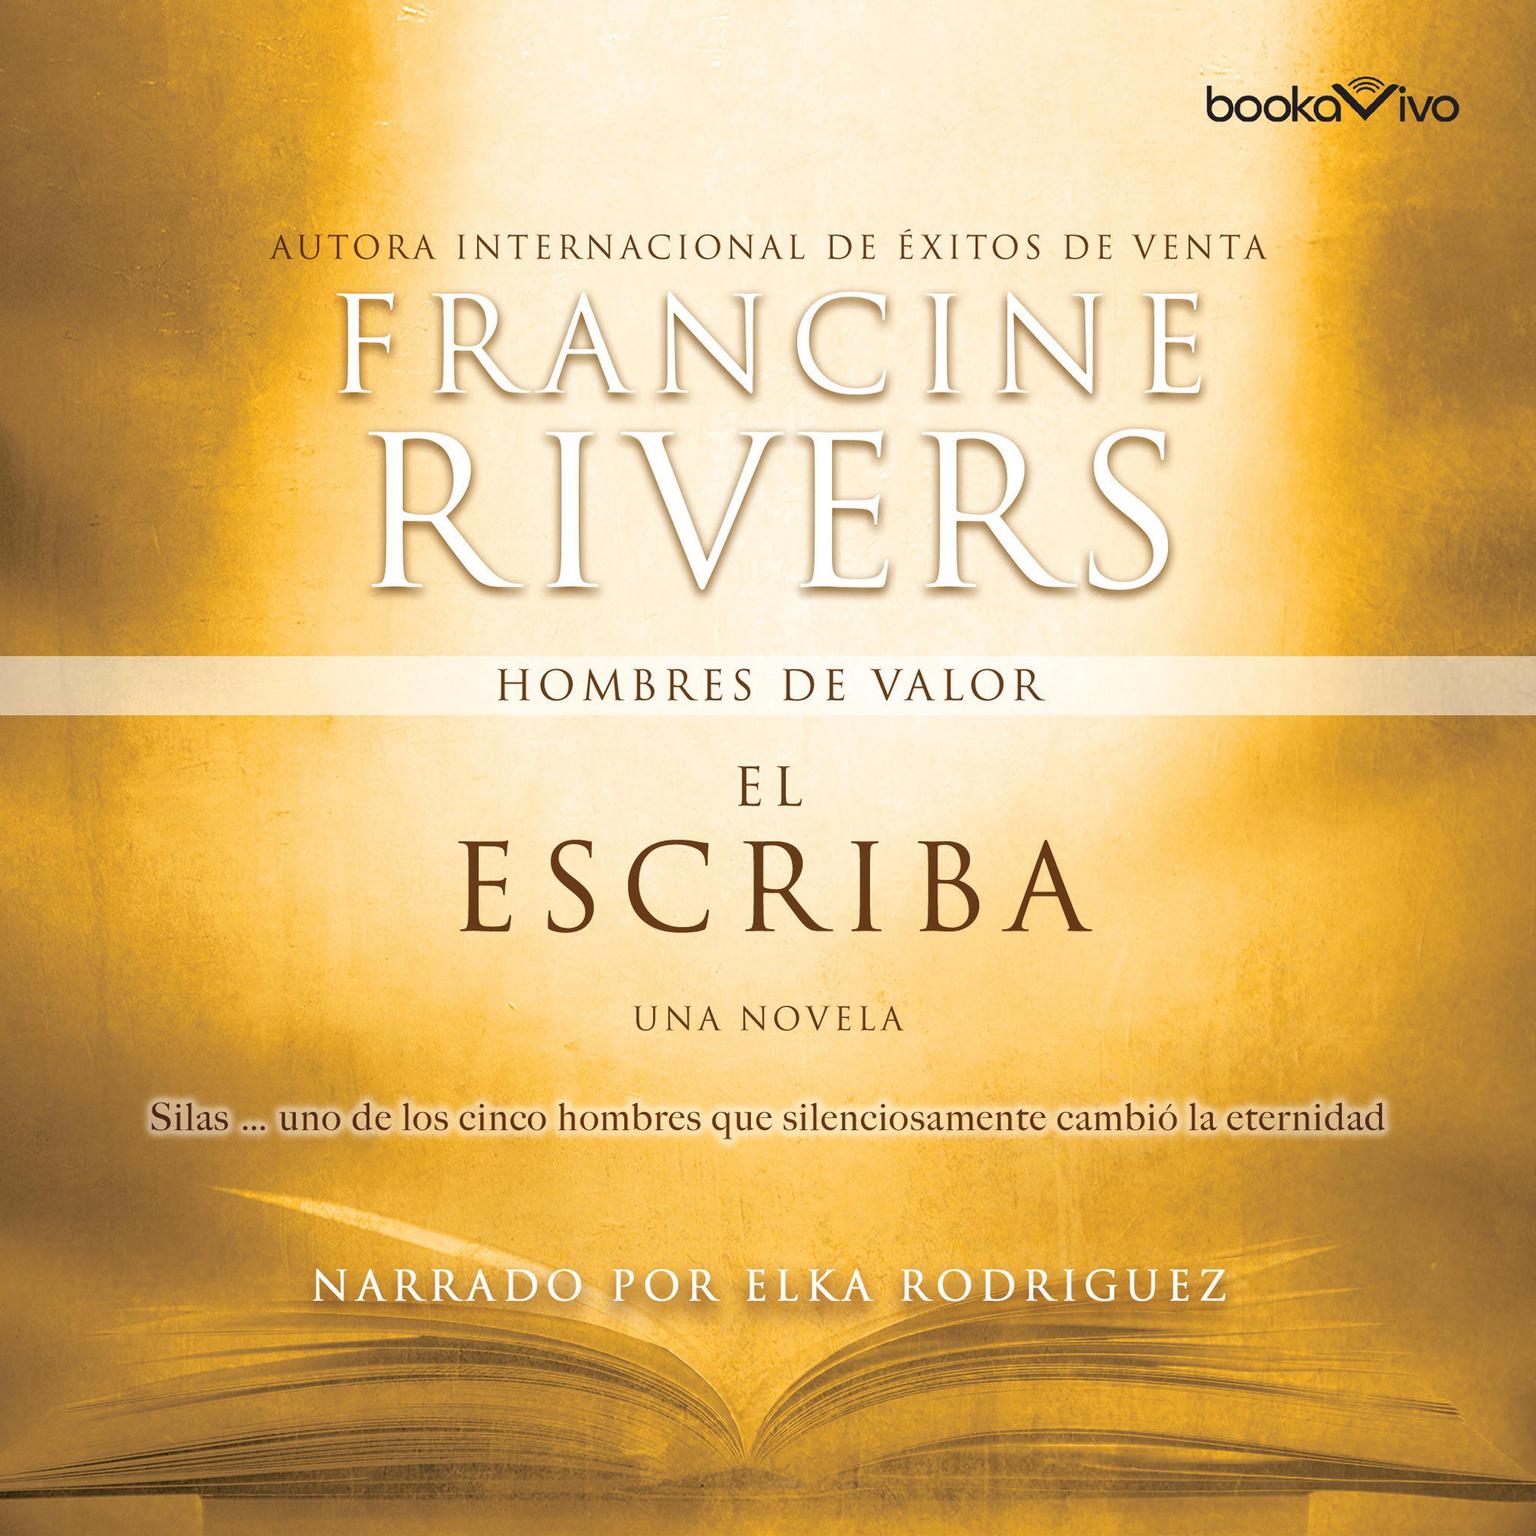 El escriba: Silas Audiobook, by Francine Rivers